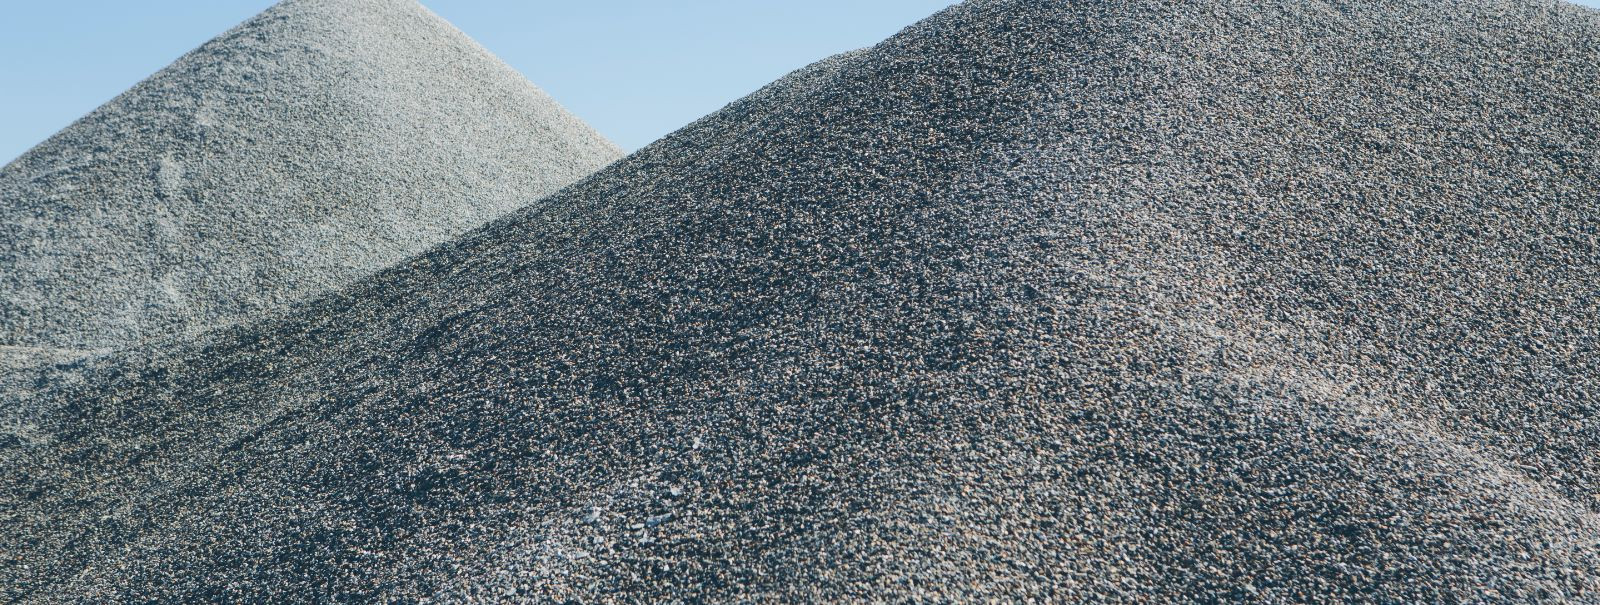 Killustikumaterjalid, nagu liiv, kruus ja purustatud kivi, on olulised komponendid ehitus- ja maastikukujundusprojektides. Nende kvaliteet võib oluliselt mõjuta